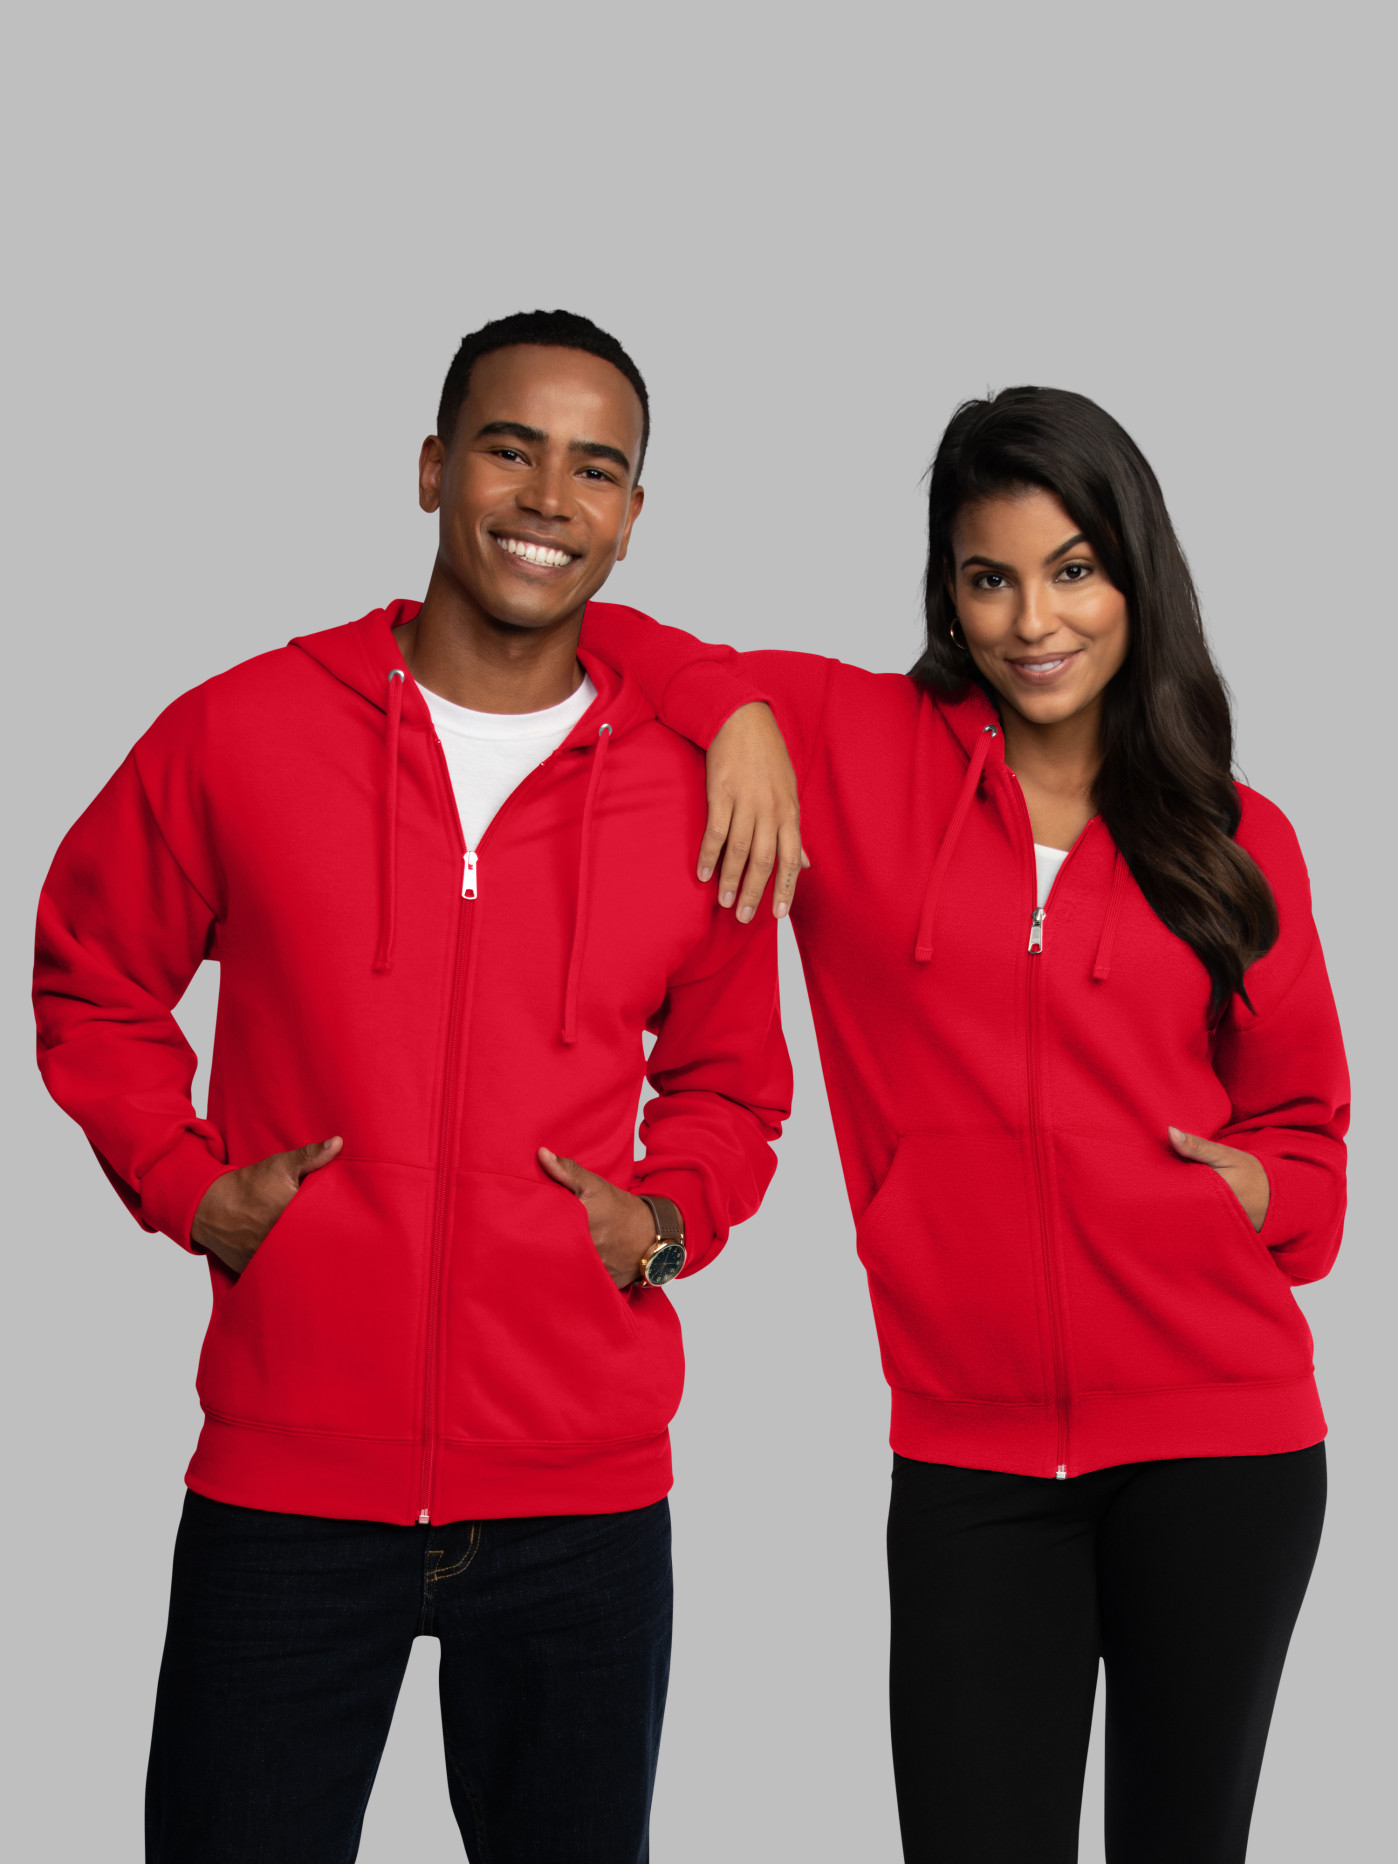 Men's SONOMA Goods for Life Supersoft Full-Zip Fleece Sweater for $10.49  Shipped (Reg $48)!